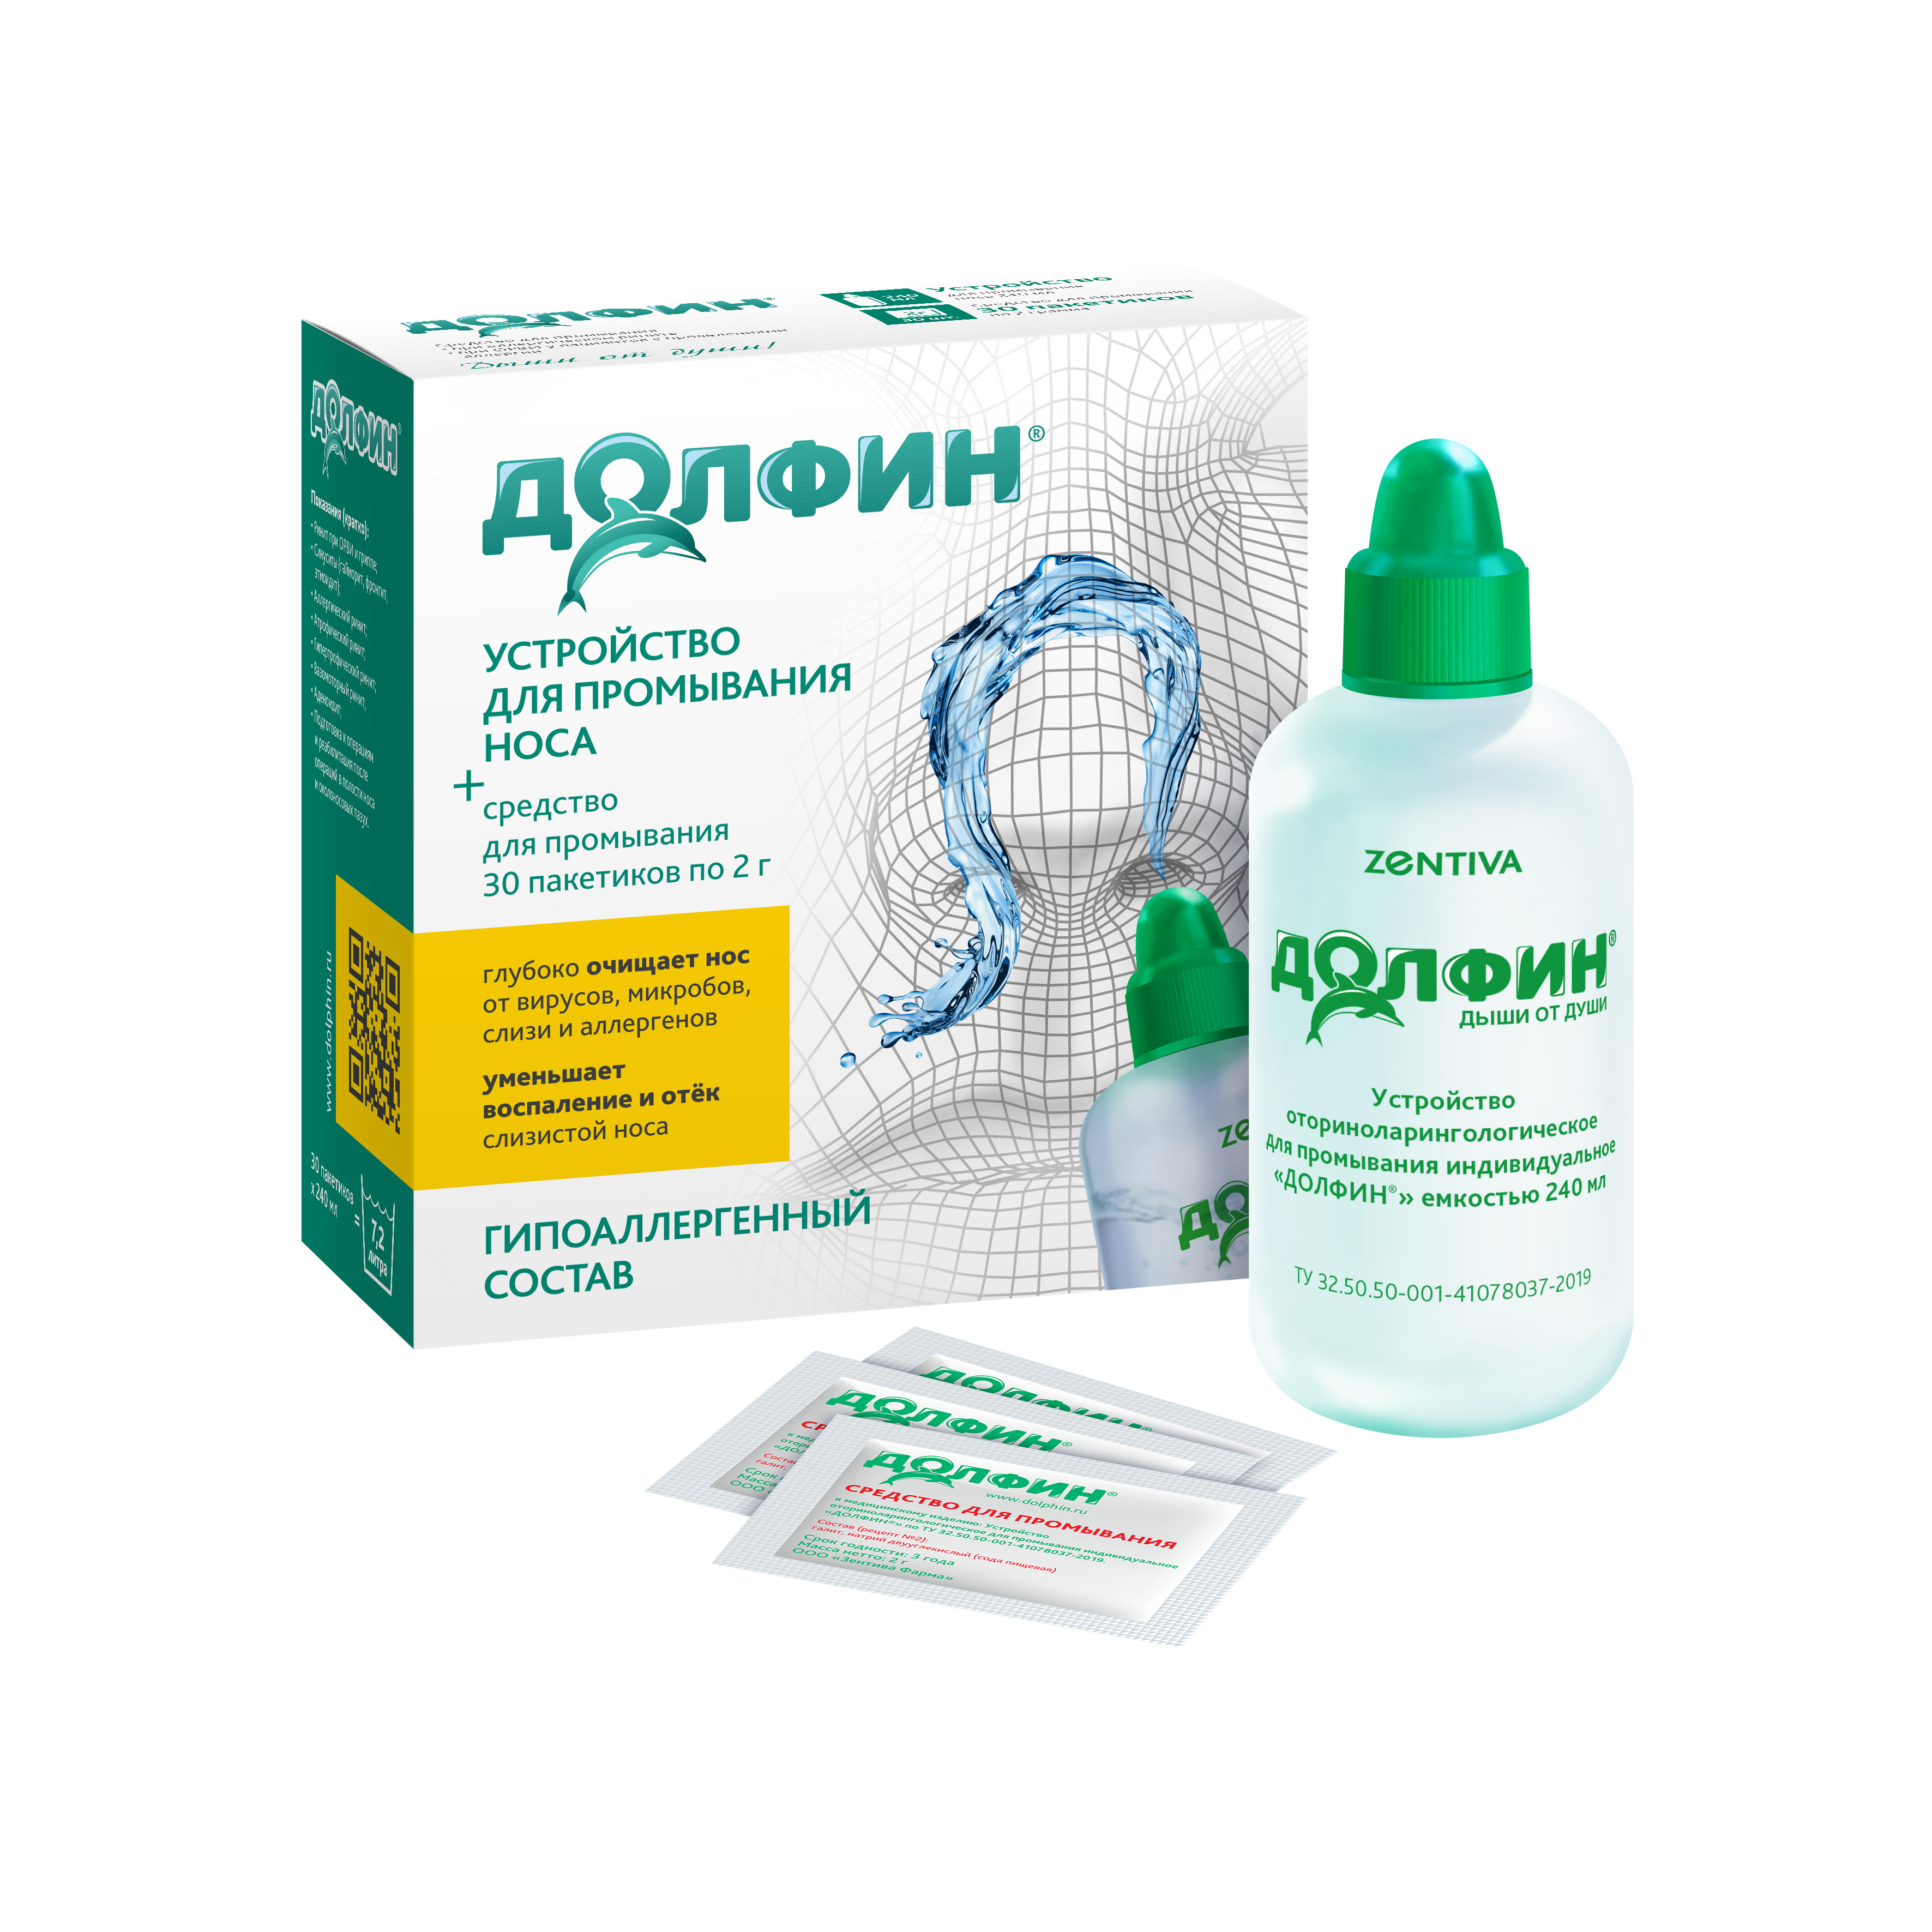 Долфин, устройство для промывания носа при аллергии, 240 мл + минерально-растительное средство 30 пакетиков, 1 уп